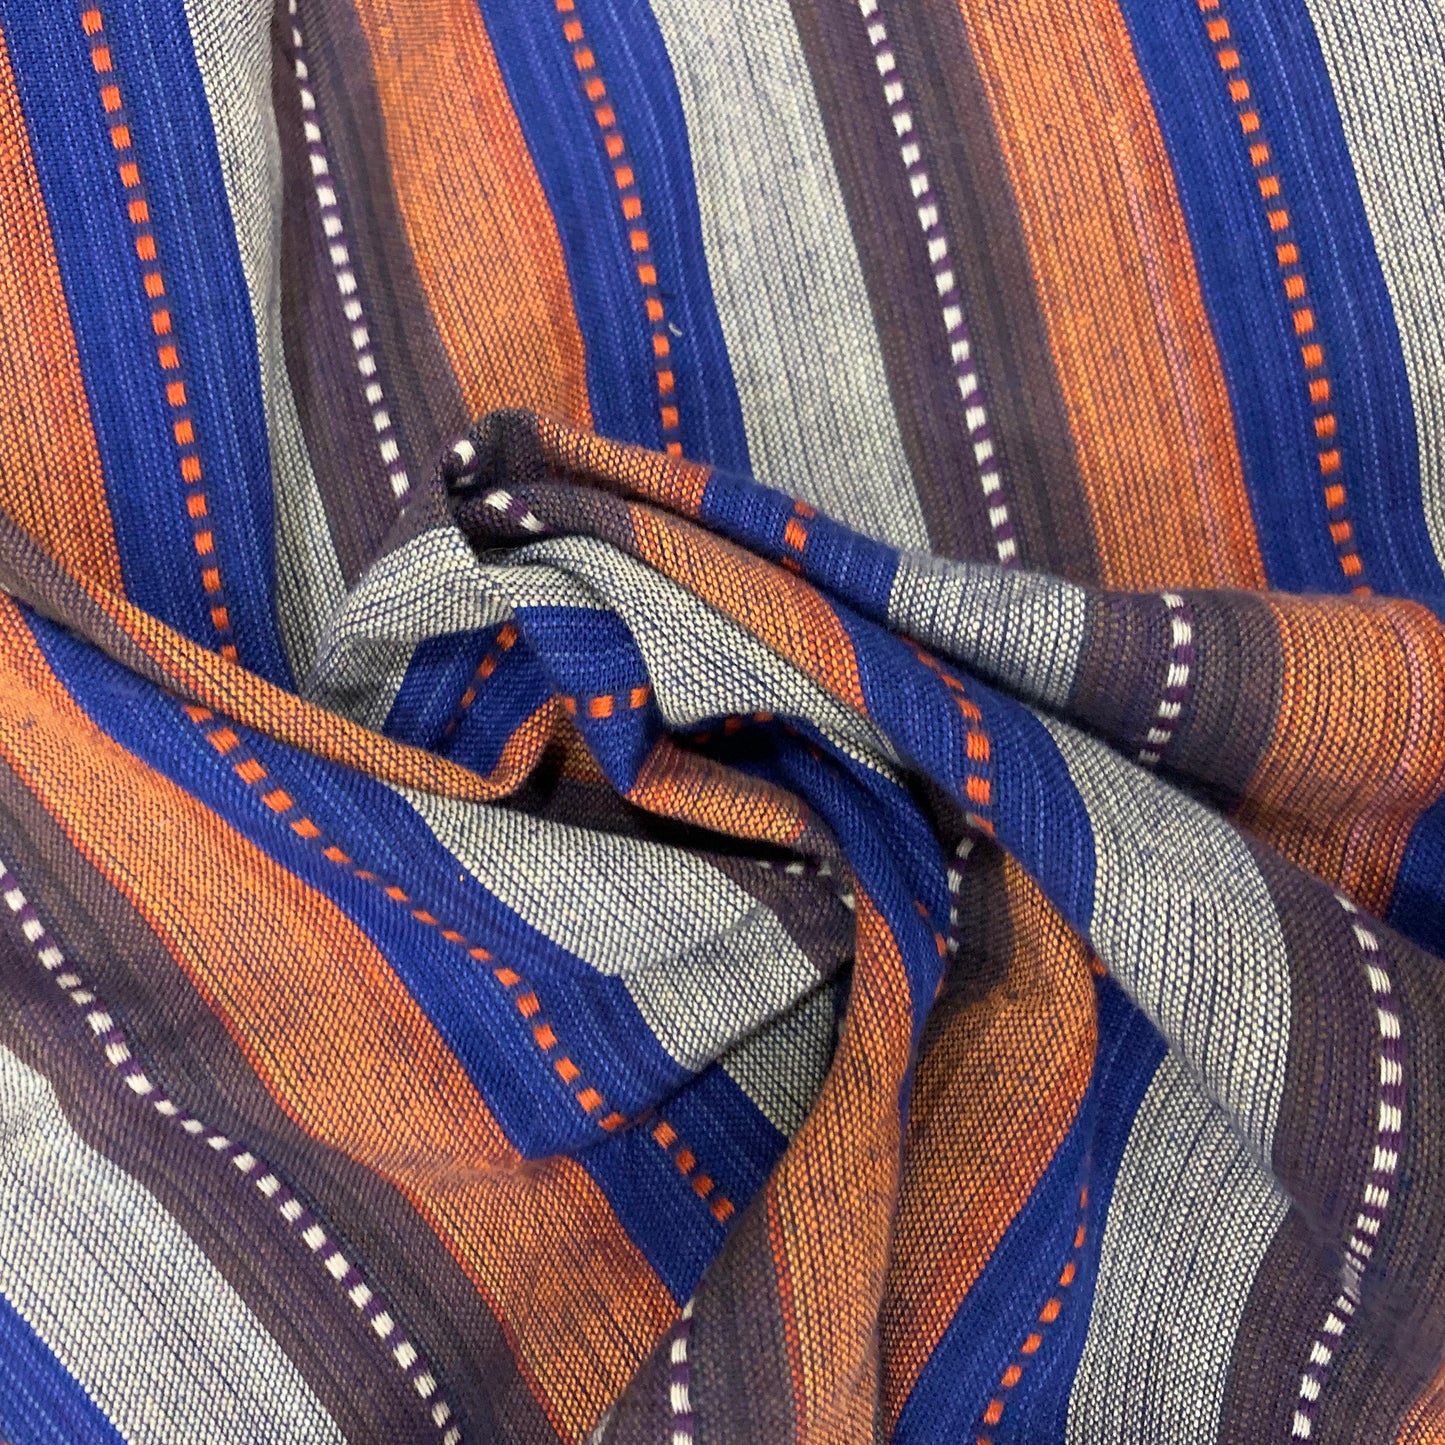 Multicoloured Striped Cotton Fabric